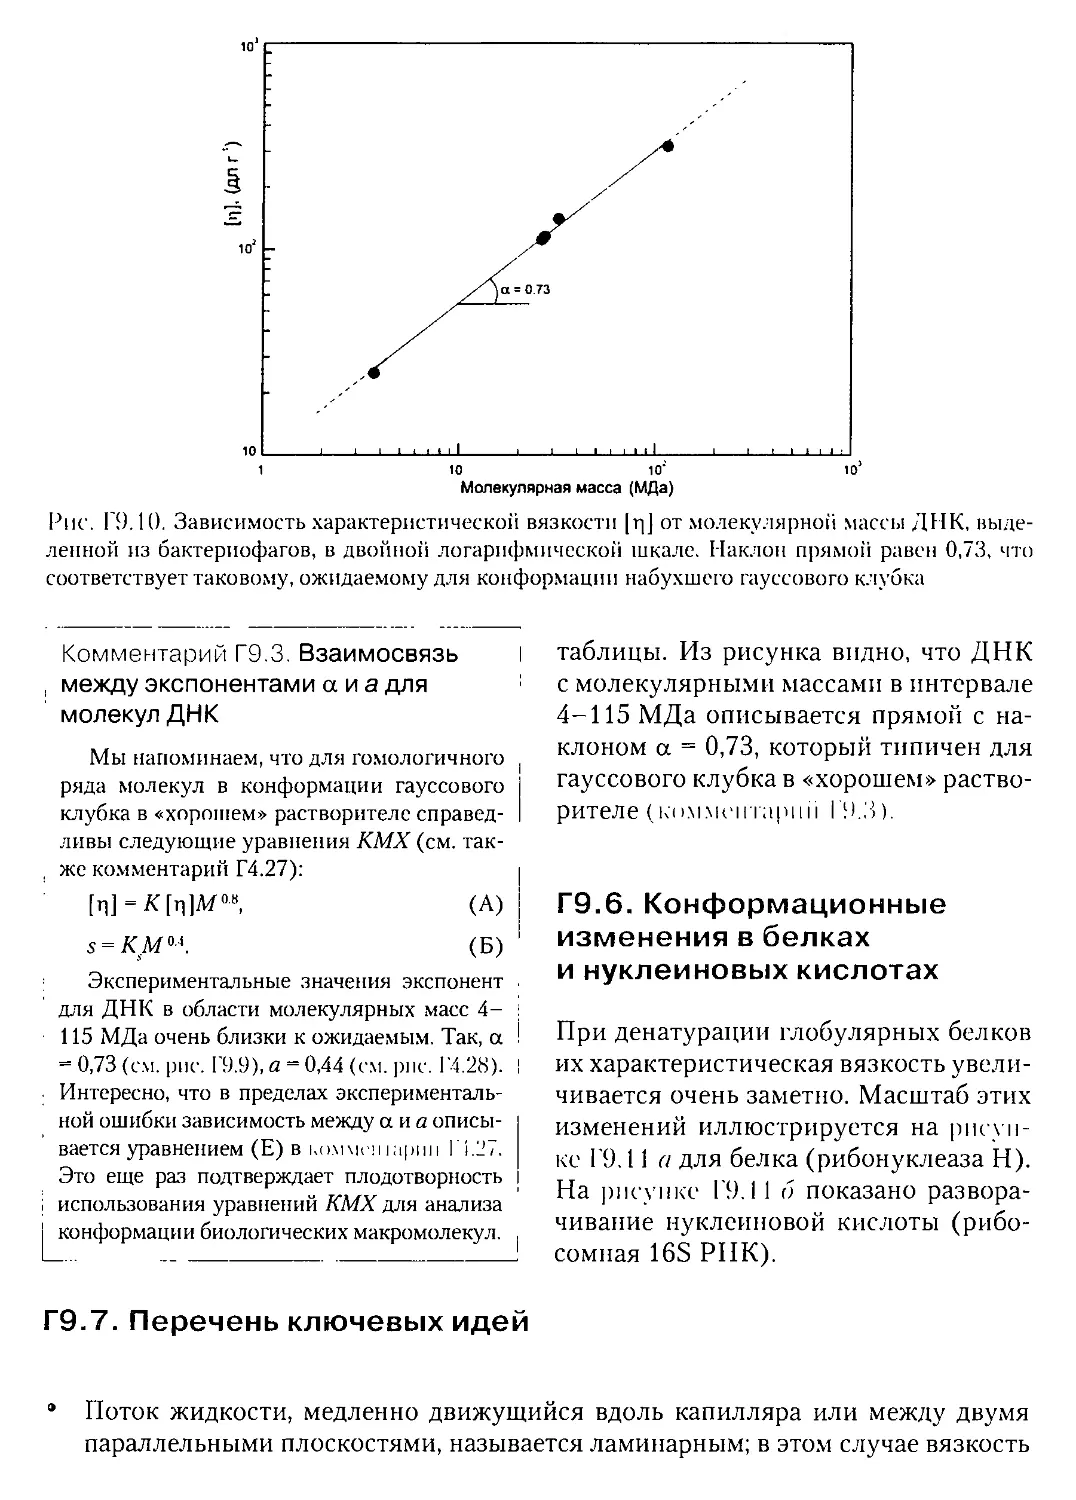 Г.9.6. Конформационные изменения в белках и нуклеиновых кислотах
Г.9.7. Перечень ключевых идей